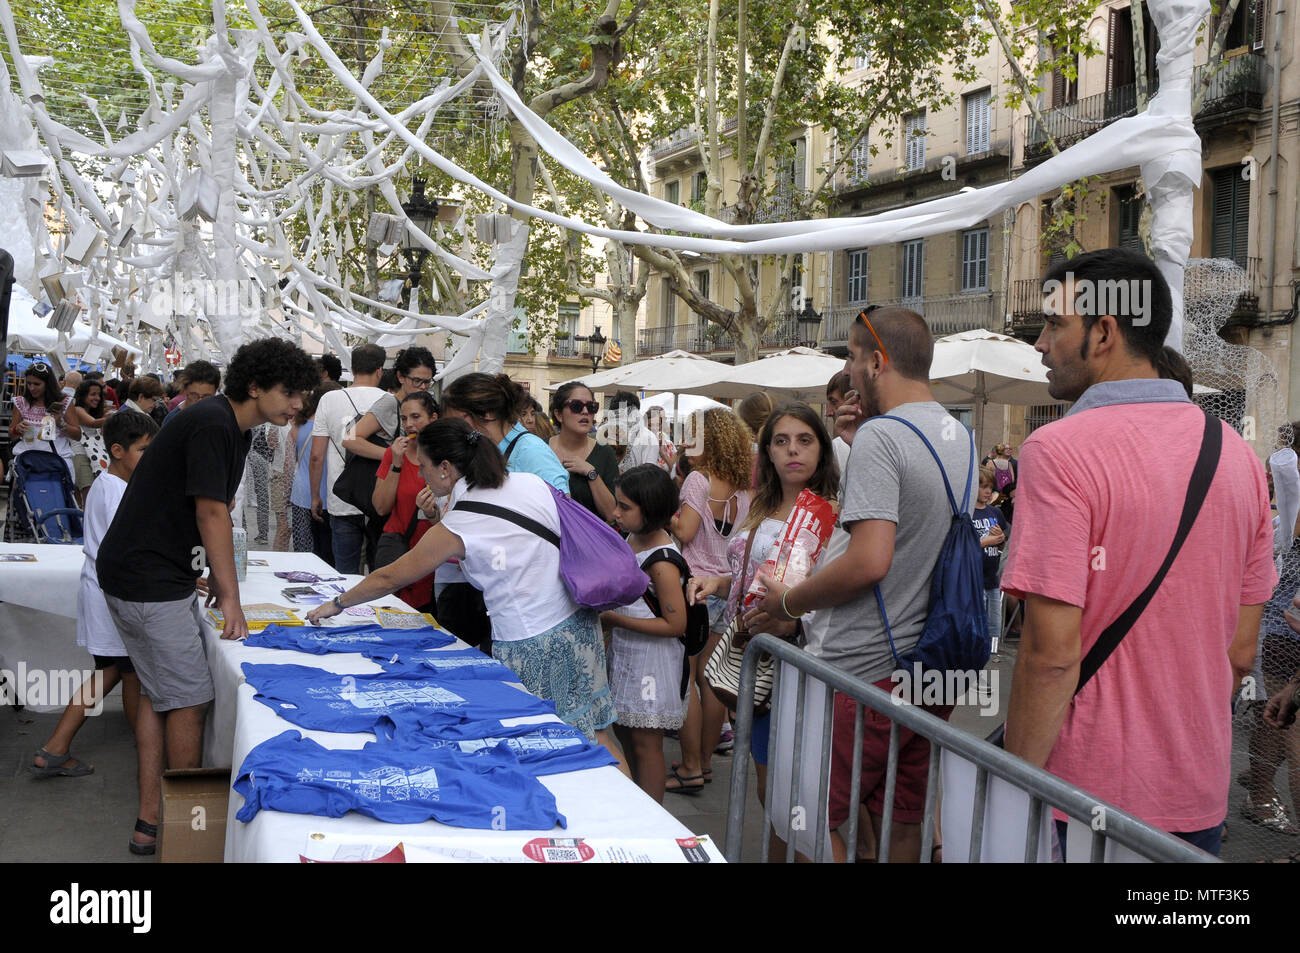 STRETS dekoriert im Stadtteil Gracia SOMMER FESTIVAL IN BARCELONA, die Leute, die die verschiedenen Straßen DEKORATIONEN RUND UM GRACIA FEST. Foto: Rosmi Stockfoto